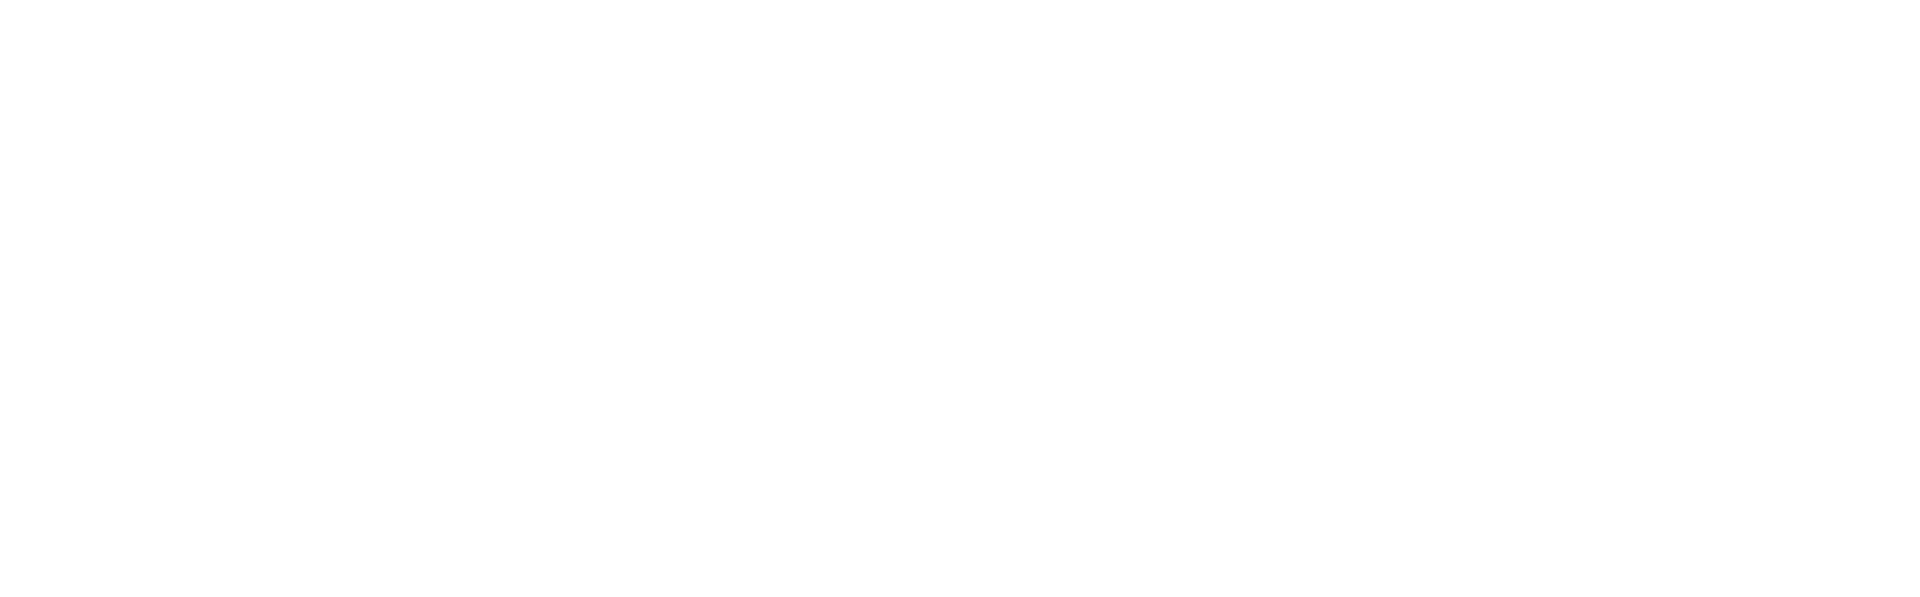 The Love of God white logo